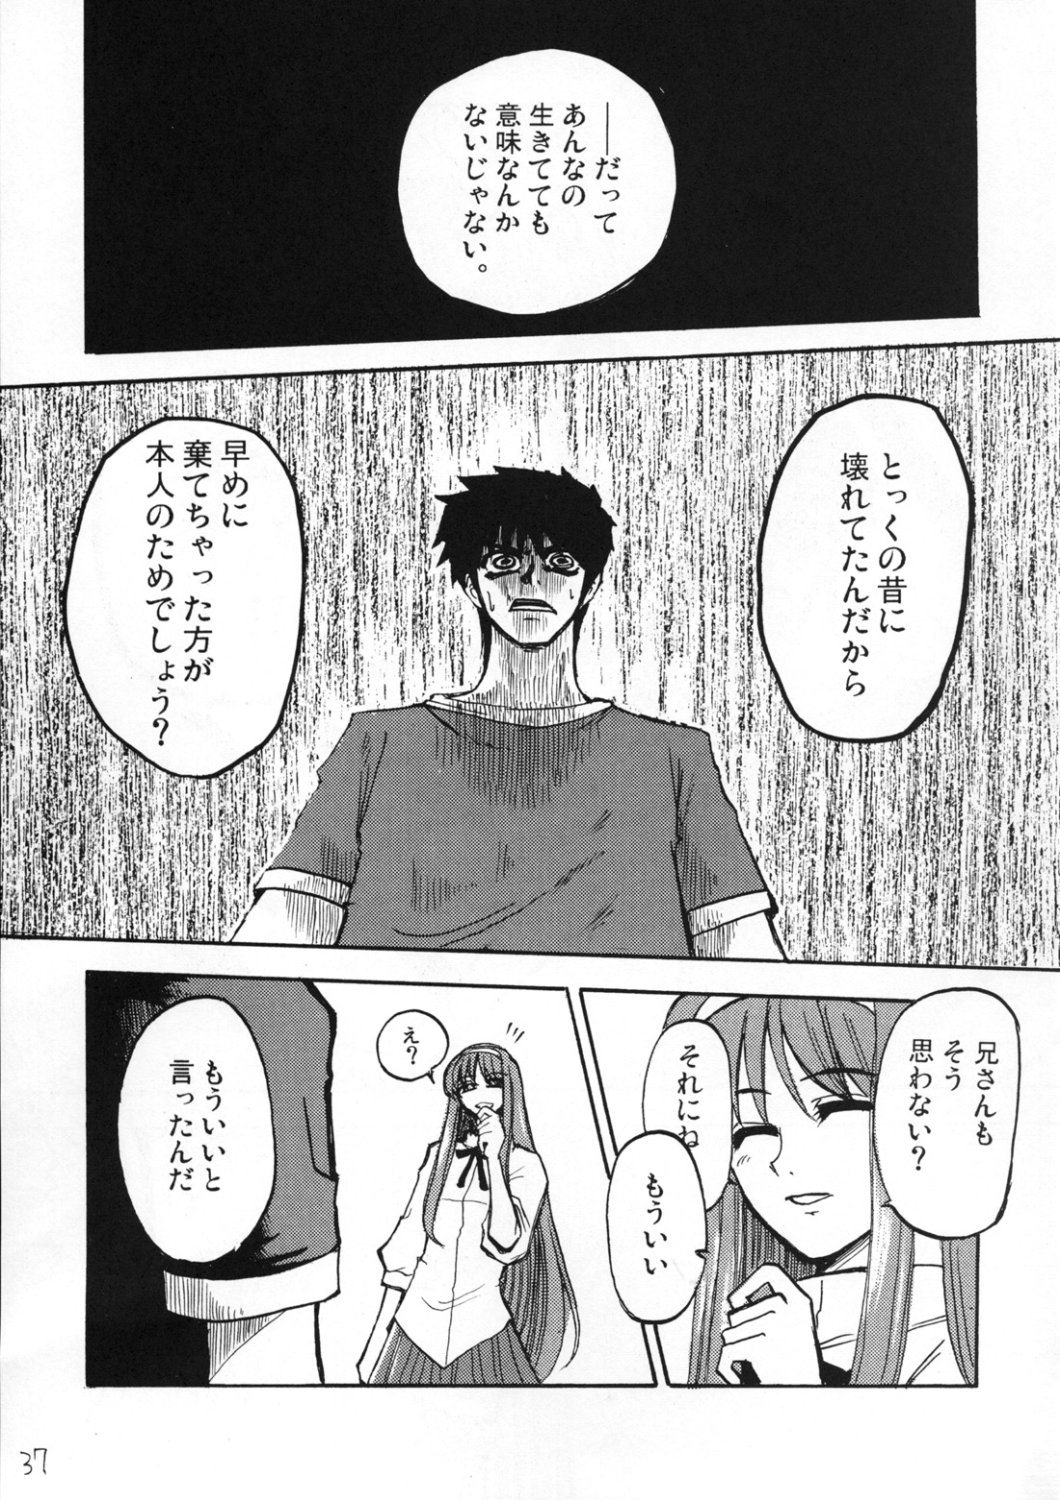 [Inochi no Furusato, Neko-bus Tei, Zangyaku Koui Teate] Akihamania [AKIHA MANIACS] (Tsukihime) page 36 full